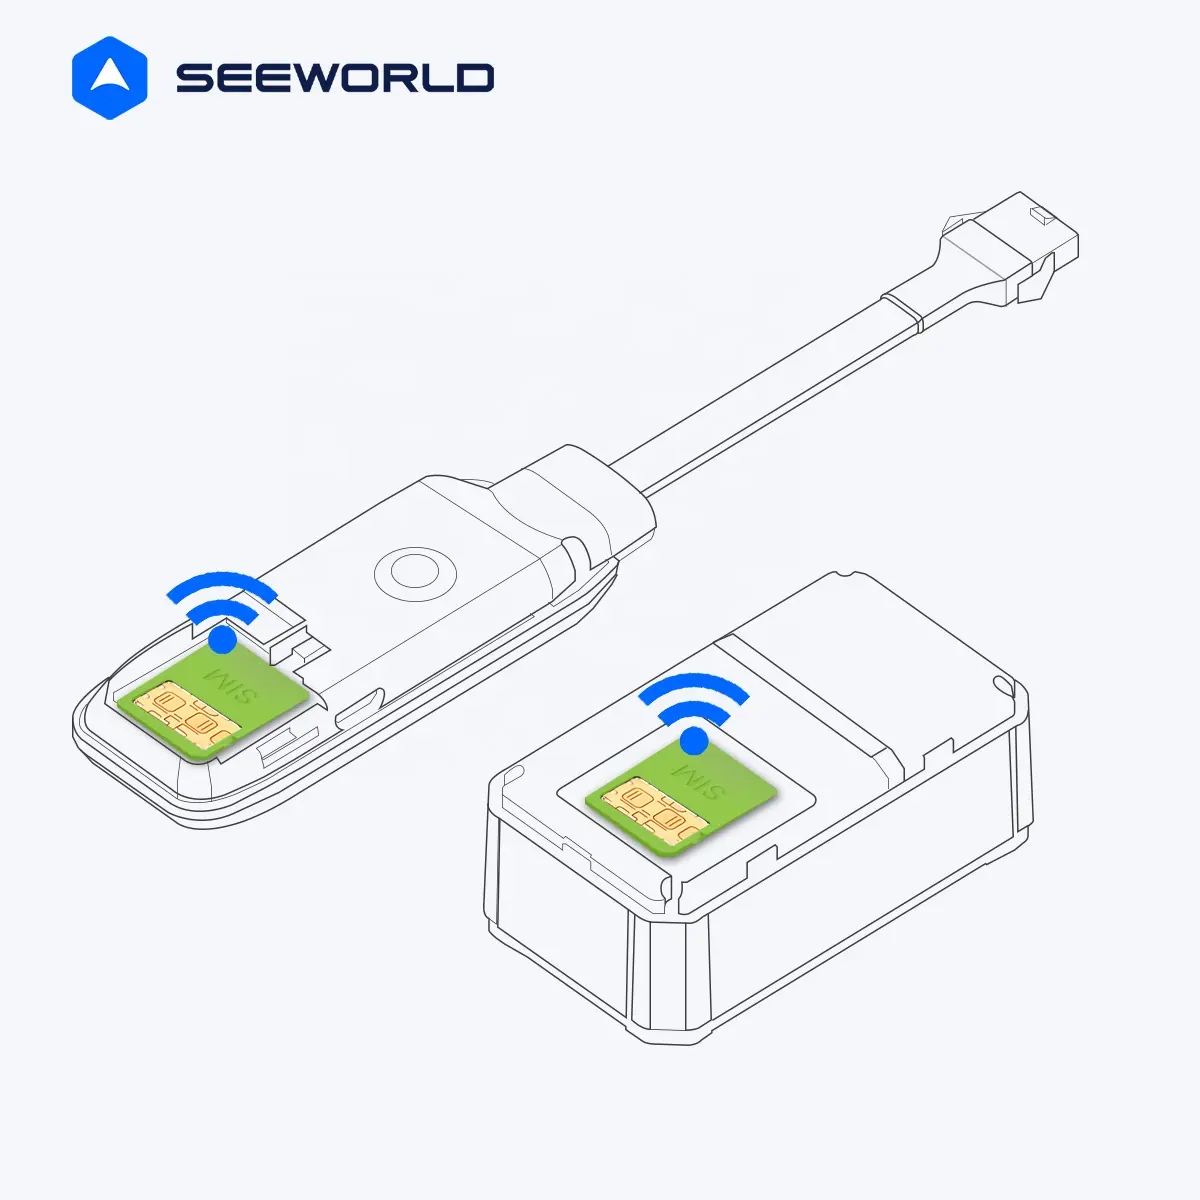 SEEWORLD अंतरराष्ट्रीय IoT डेटा काम करता है के लिए असीमित IoT सिम कार्ड रोमिंग कार्ड जीपीएस ट्रैकर डिवाइस